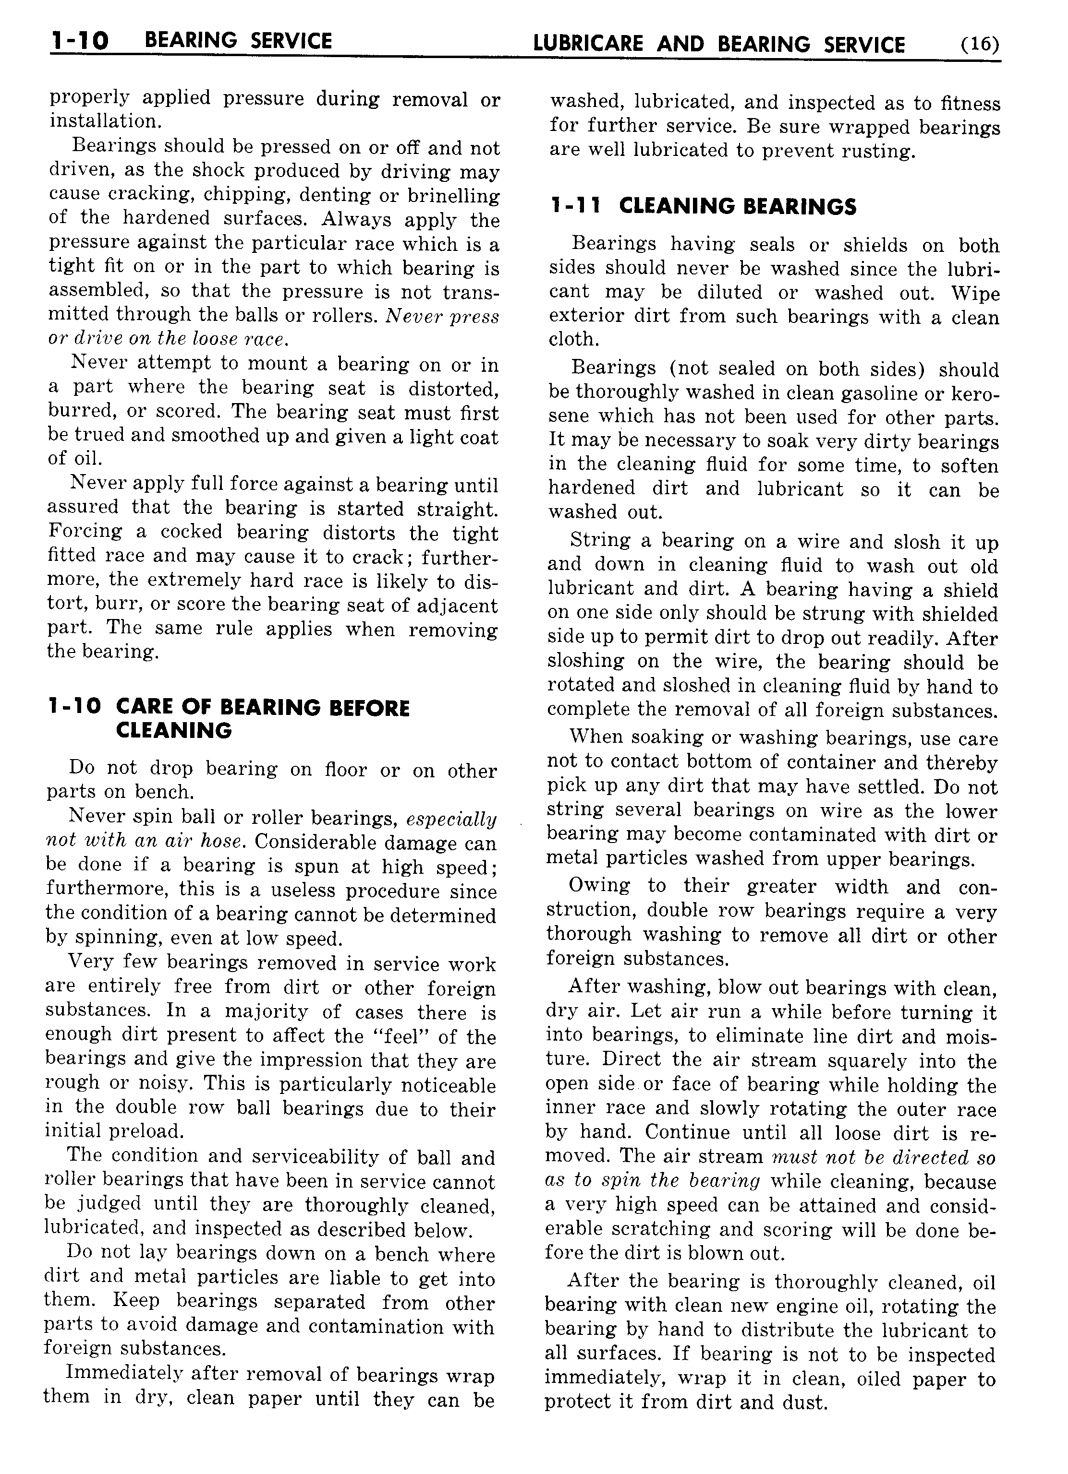 n_02 1951 Buick Shop Manual - Lubricare-010-010.jpg